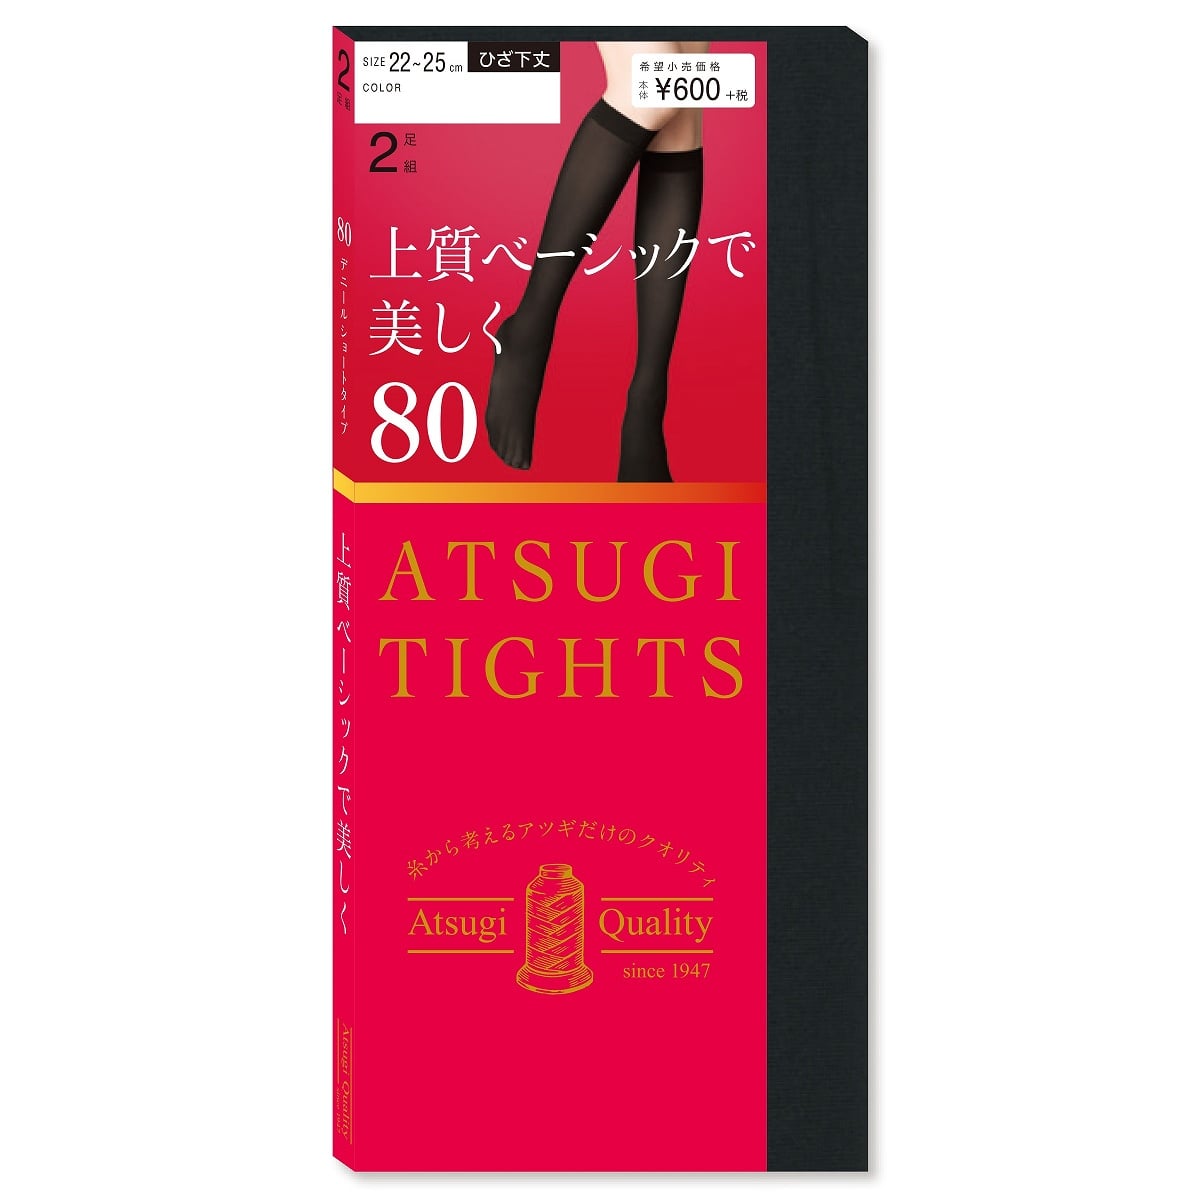 公式) ATSUGI TIGHTS / アツギタイツ 上質ベーシックで美しく 80デニール ひざ下丈 タイツ 2足組 | ATSUGI（アツギ）公式直販